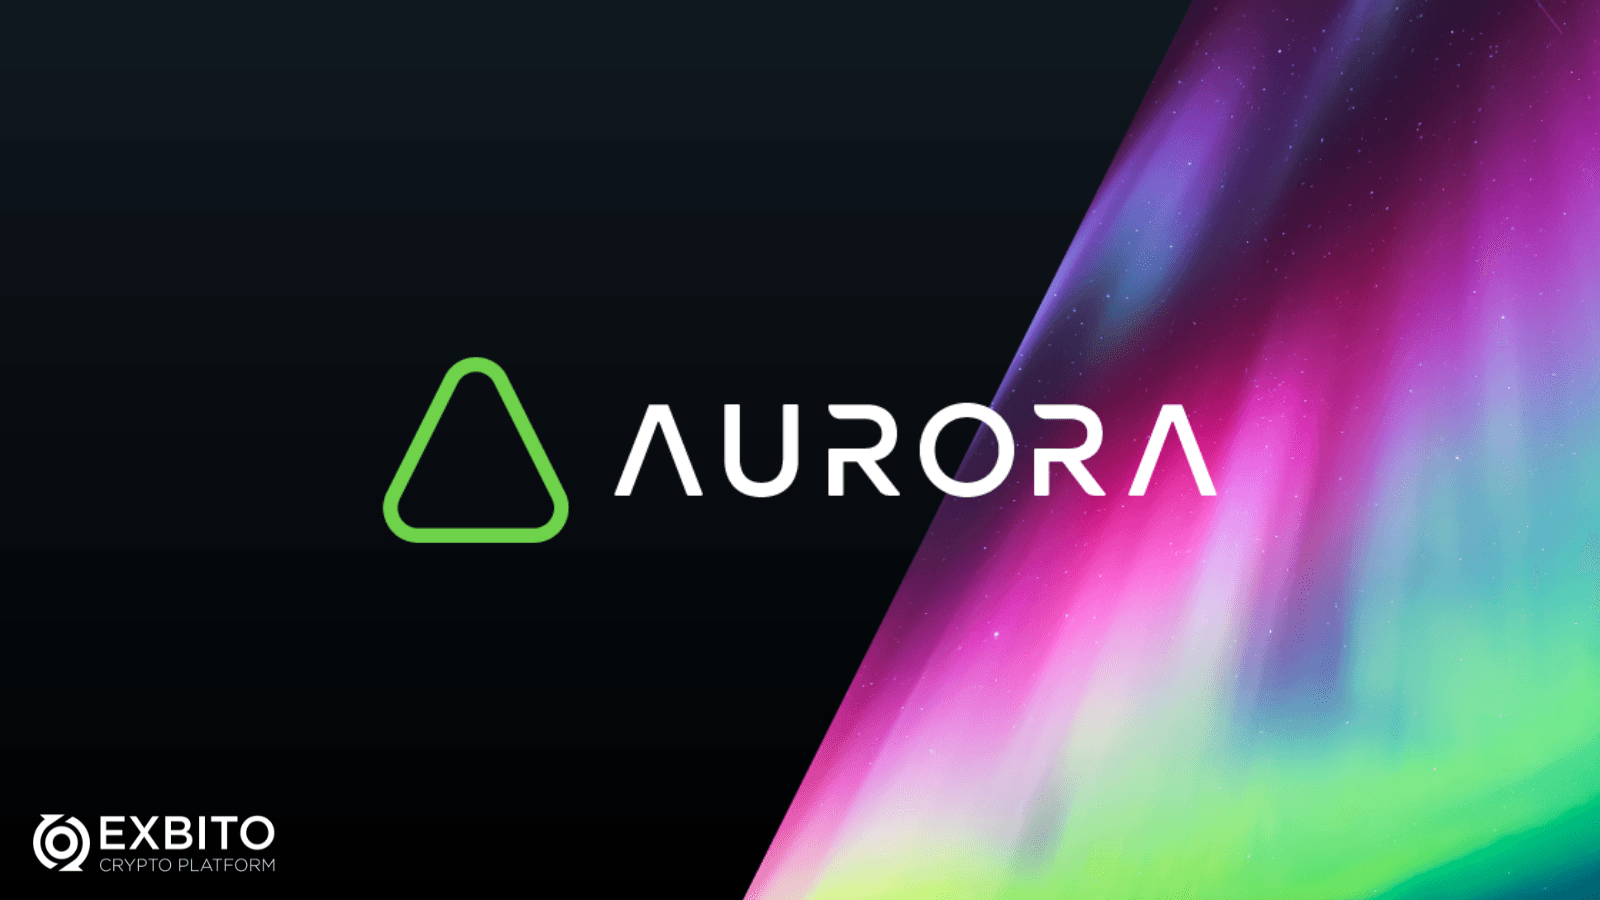  آرورا (Aurora)